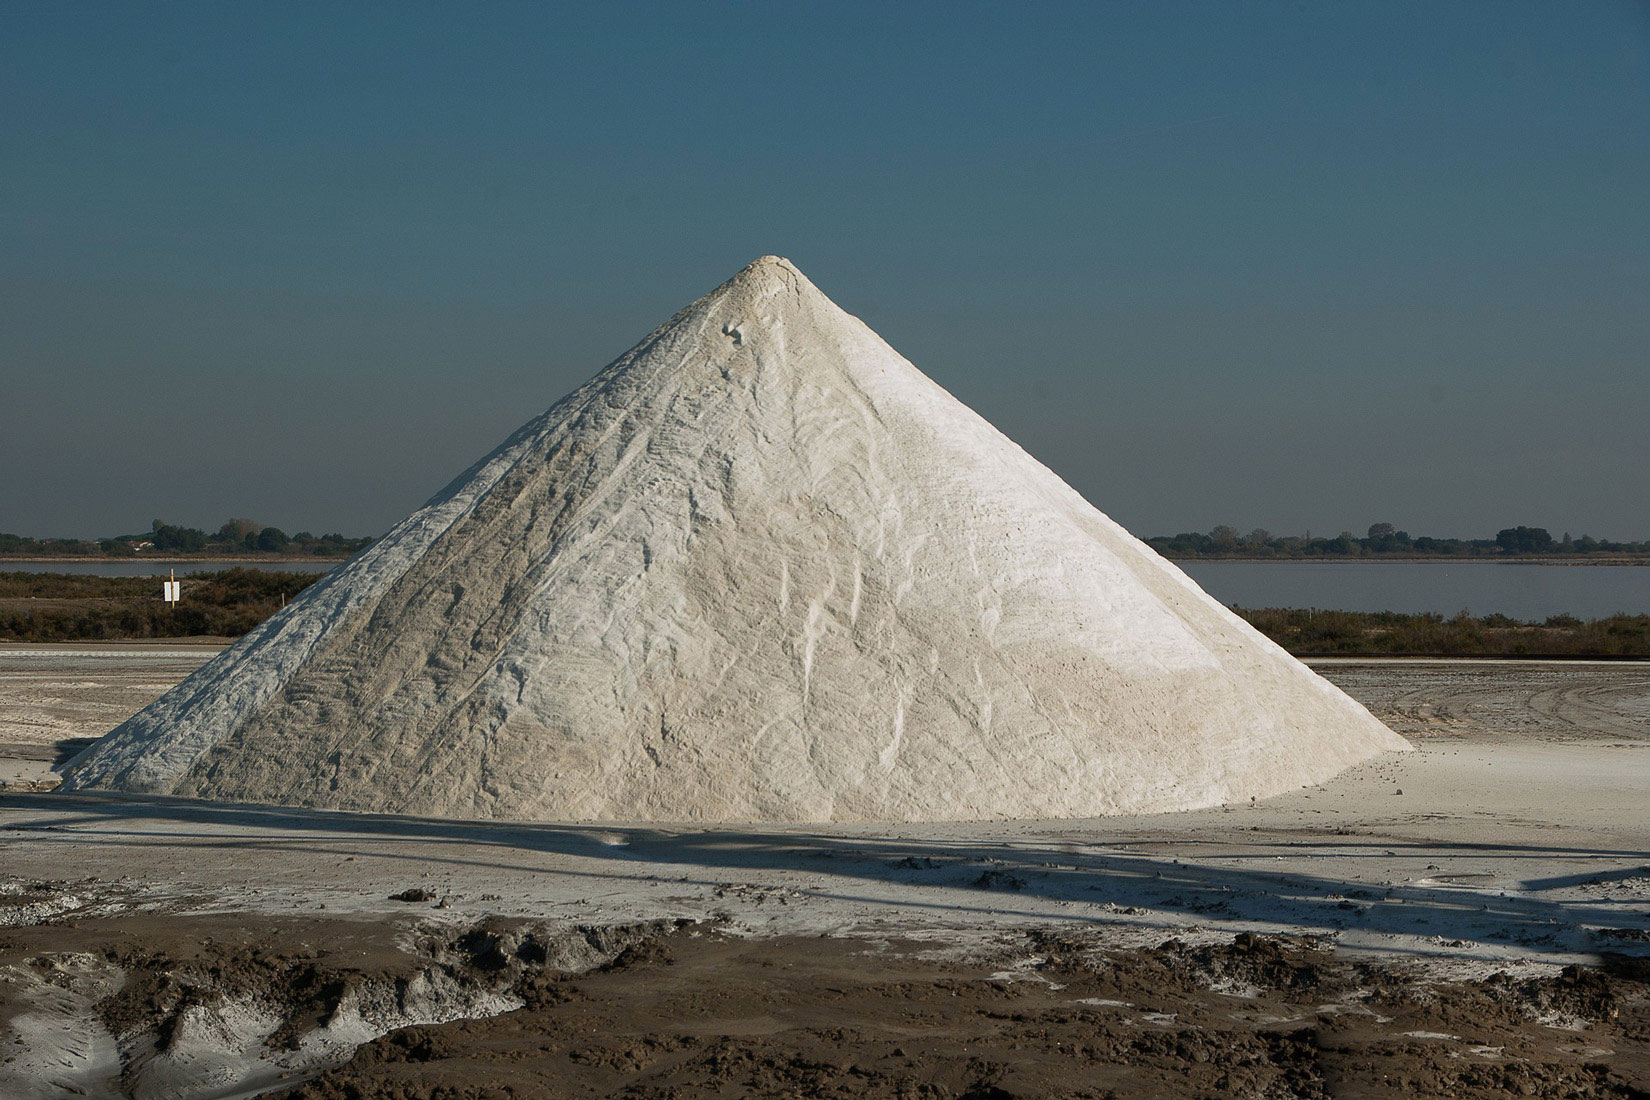 Fotografija prikazuje veliku količinu morske soli u solani koja je posložena u obliku stožca.